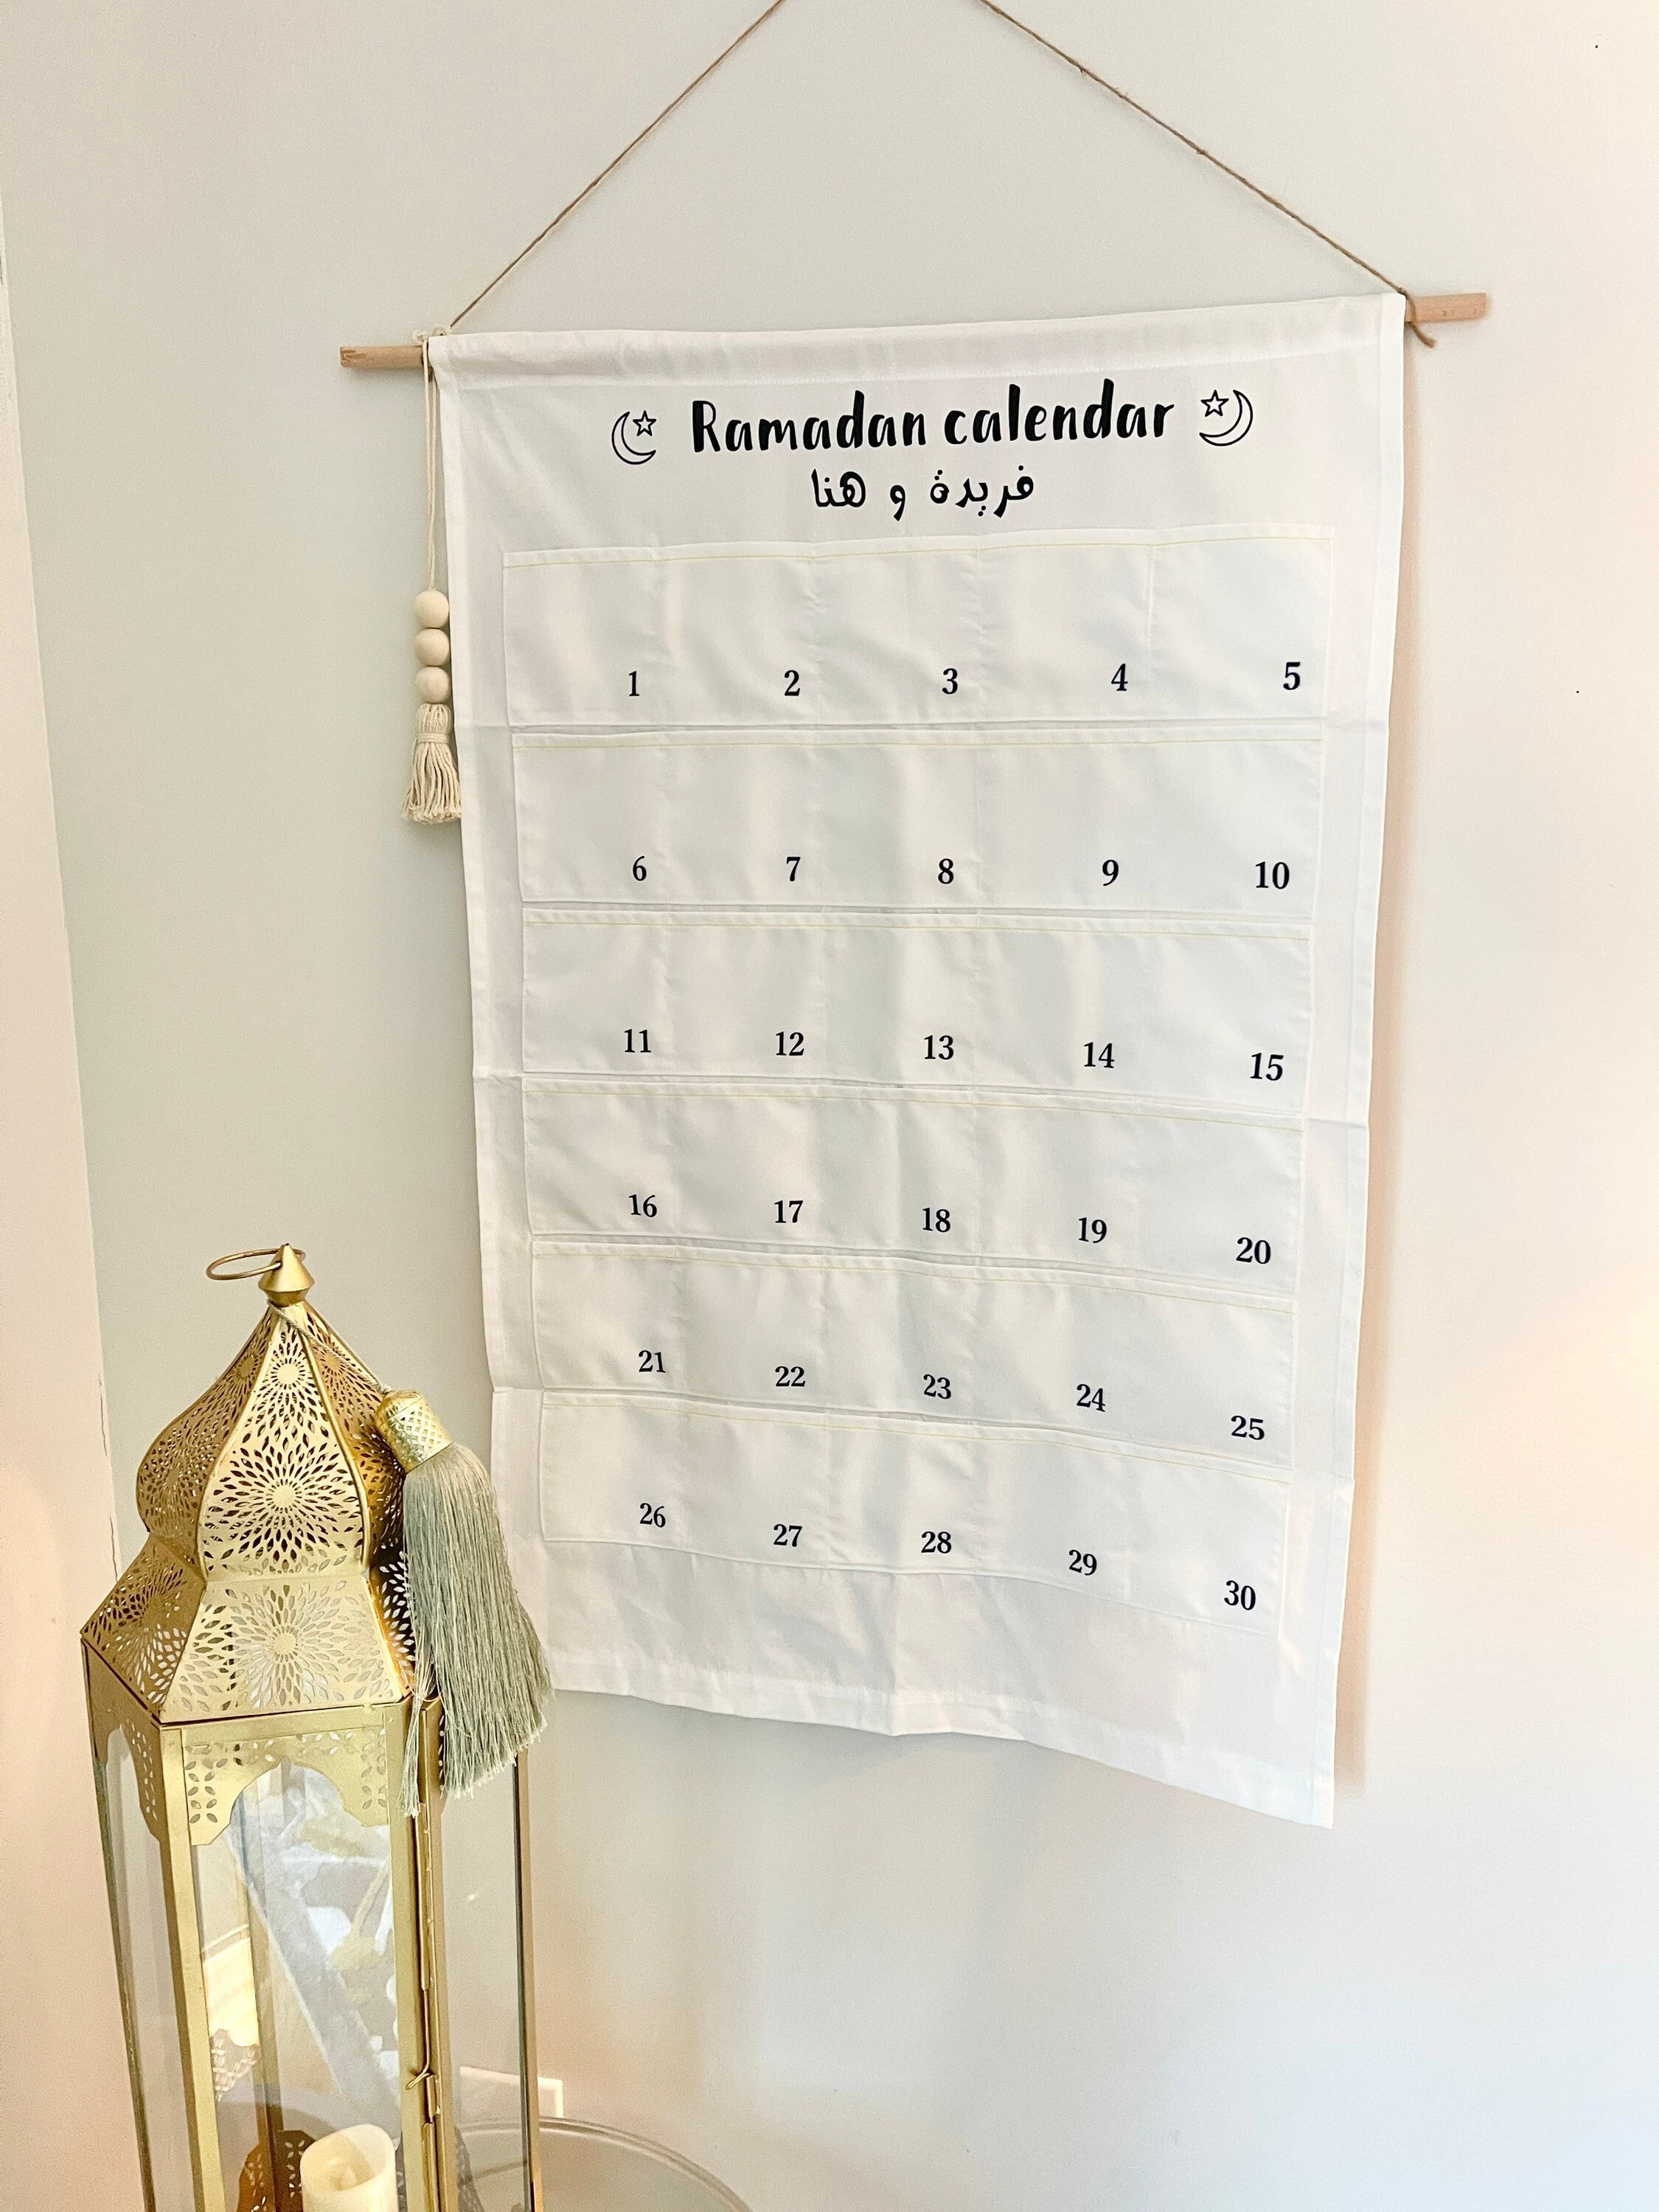 Calendrier de L'avent Ramadan Moubarak, Calendrier du Ramadan, pour  Décoration , Cadeau de Ramadan Party Decoration. - Cdiscount Beaux-Arts et  Loisirs créatifs